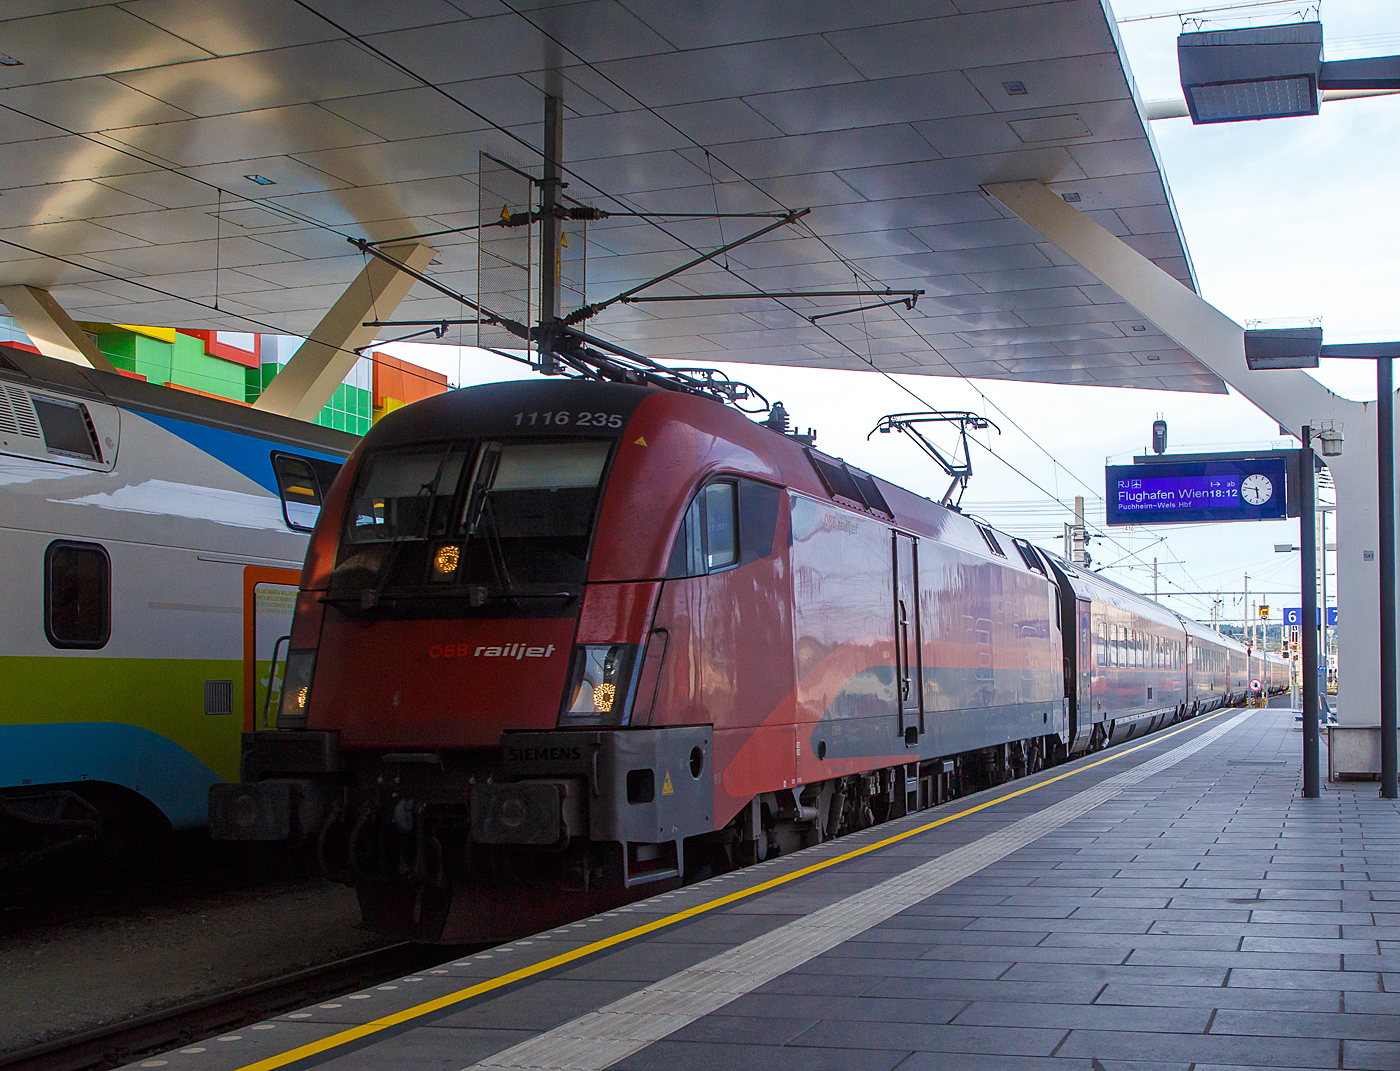 Die ÖBB-railjet 1116 235 (A-ÖBB 91 81 1116 235-3), eine Taurus 2 bzw. Siemens ES64U2, erreich am 12.09.2022, mit dem RJ 797 „Hochkönig“ (Klagenfurt - Villach - Salzburg - Linz - Wien - Flughafen Wien), den Hauptbahnhof Salzburg.